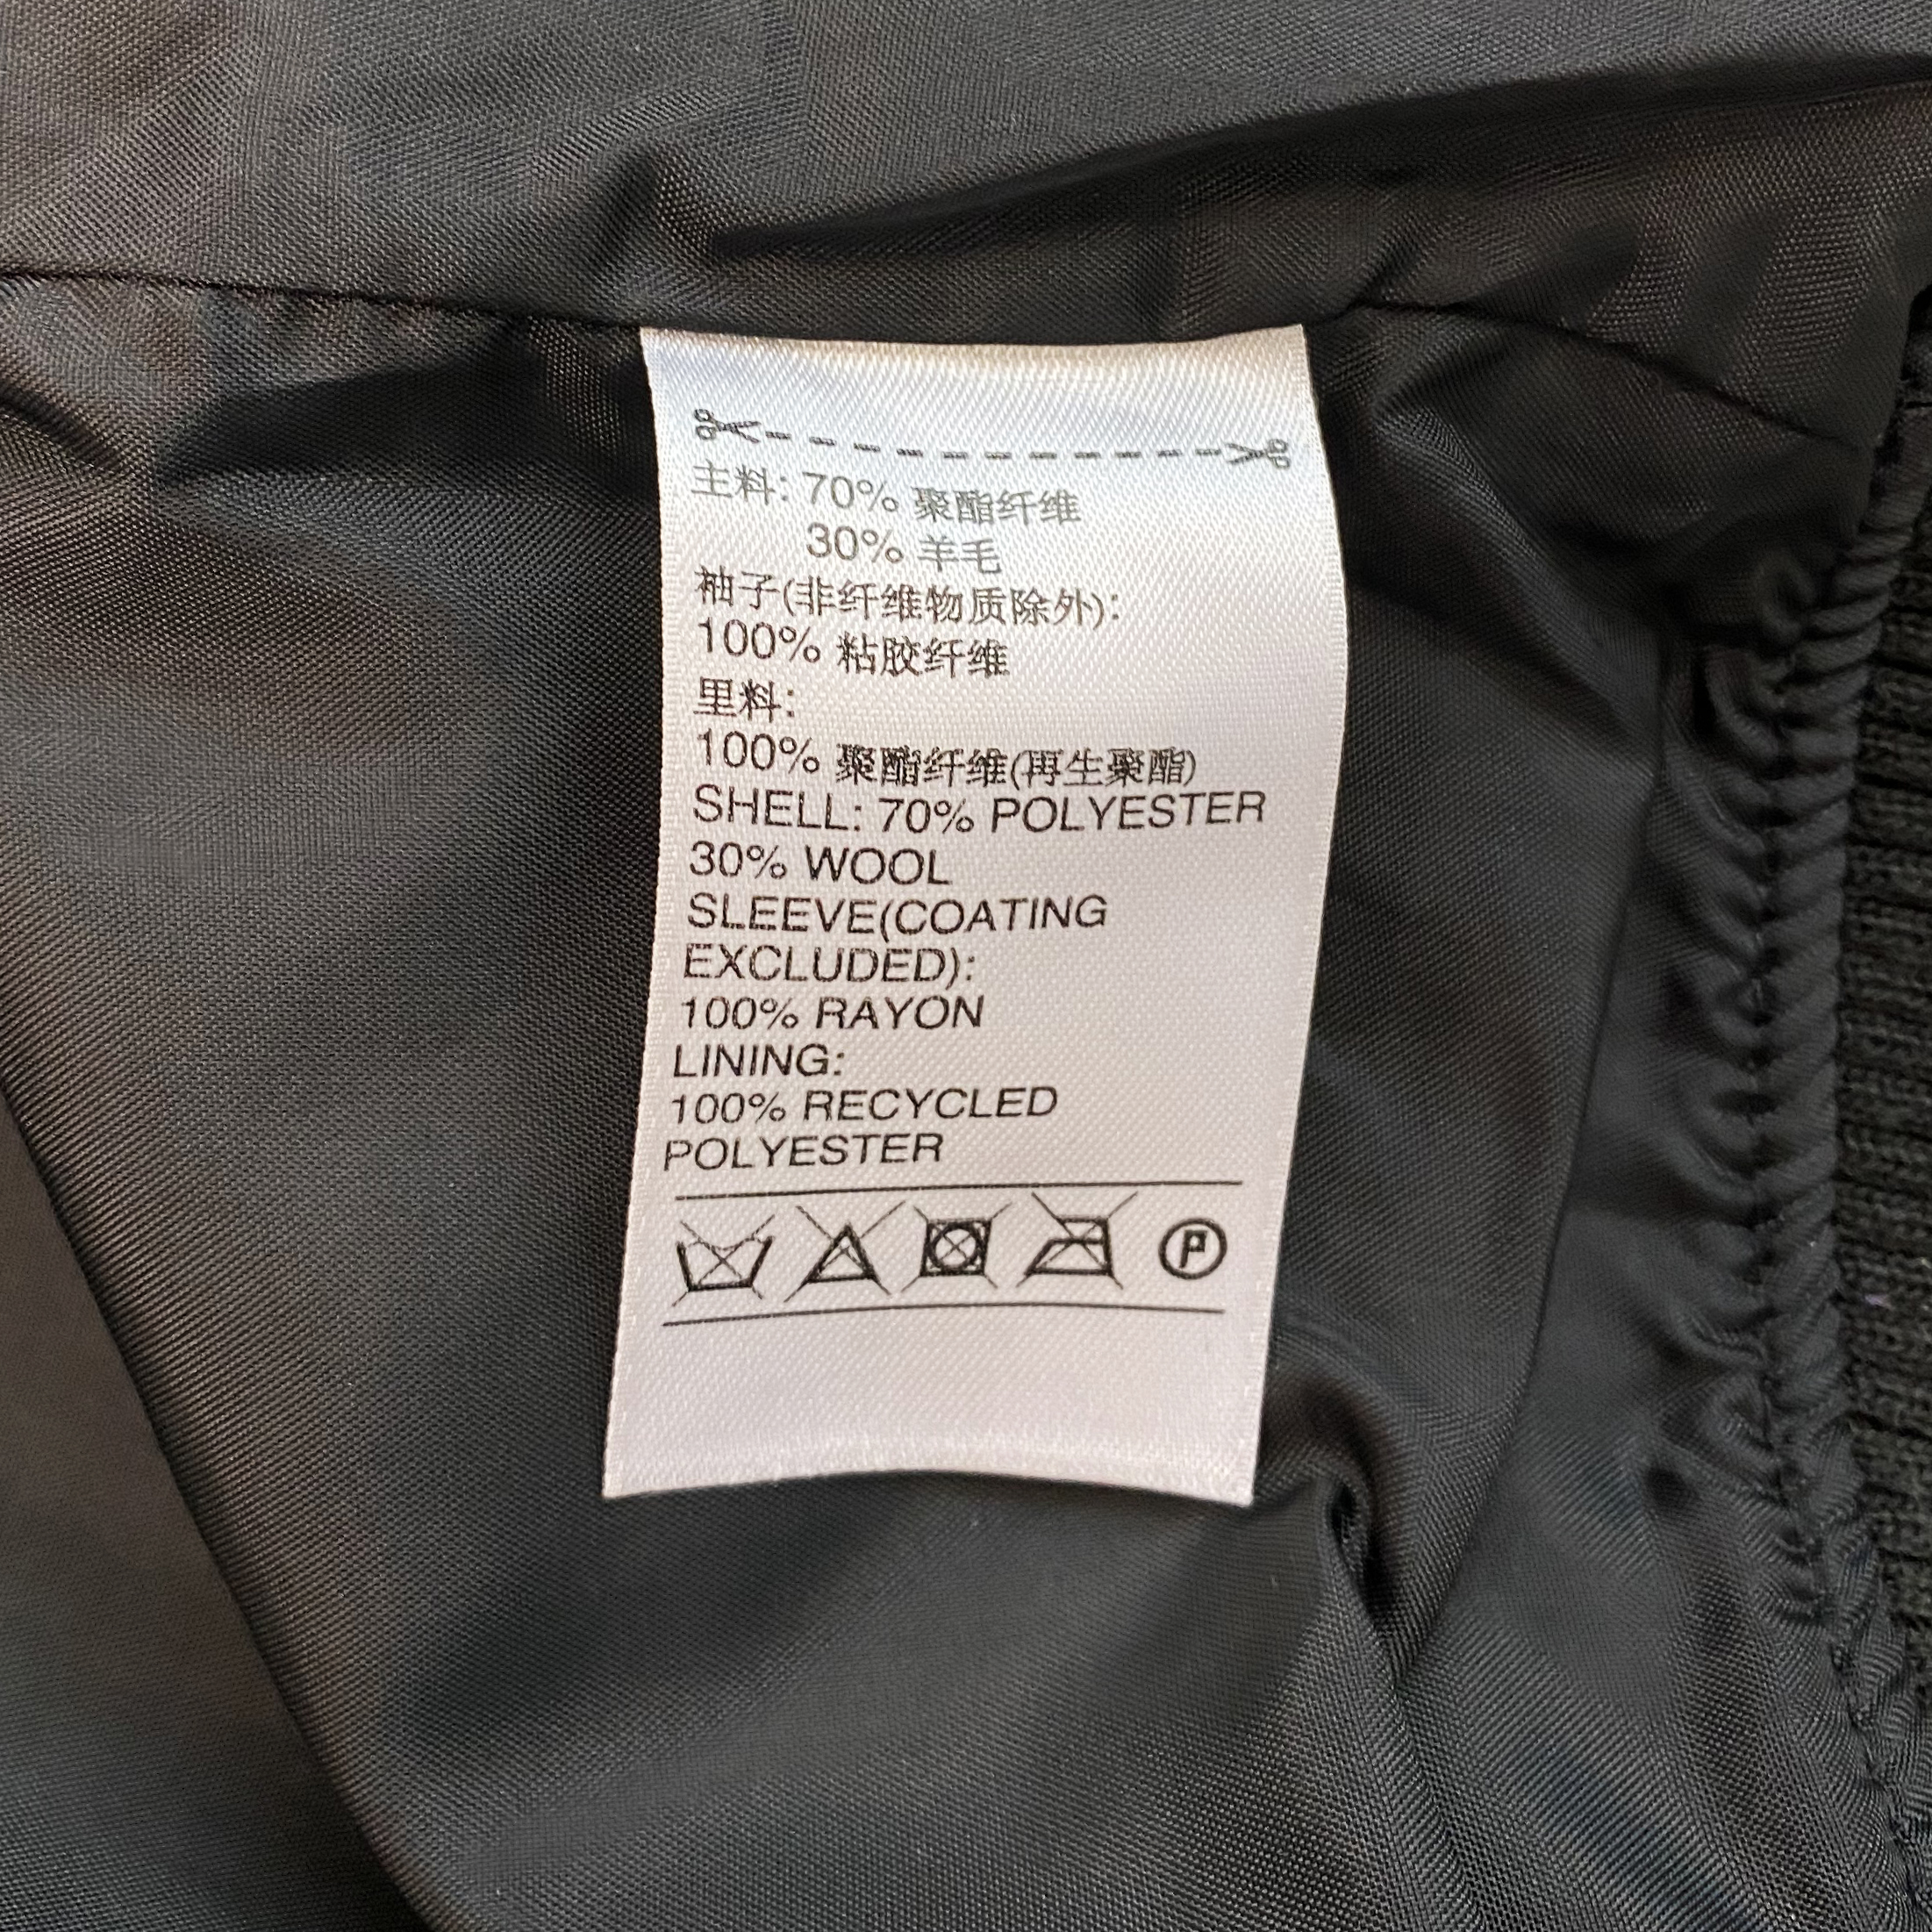 Adidas Letterman Jacket 